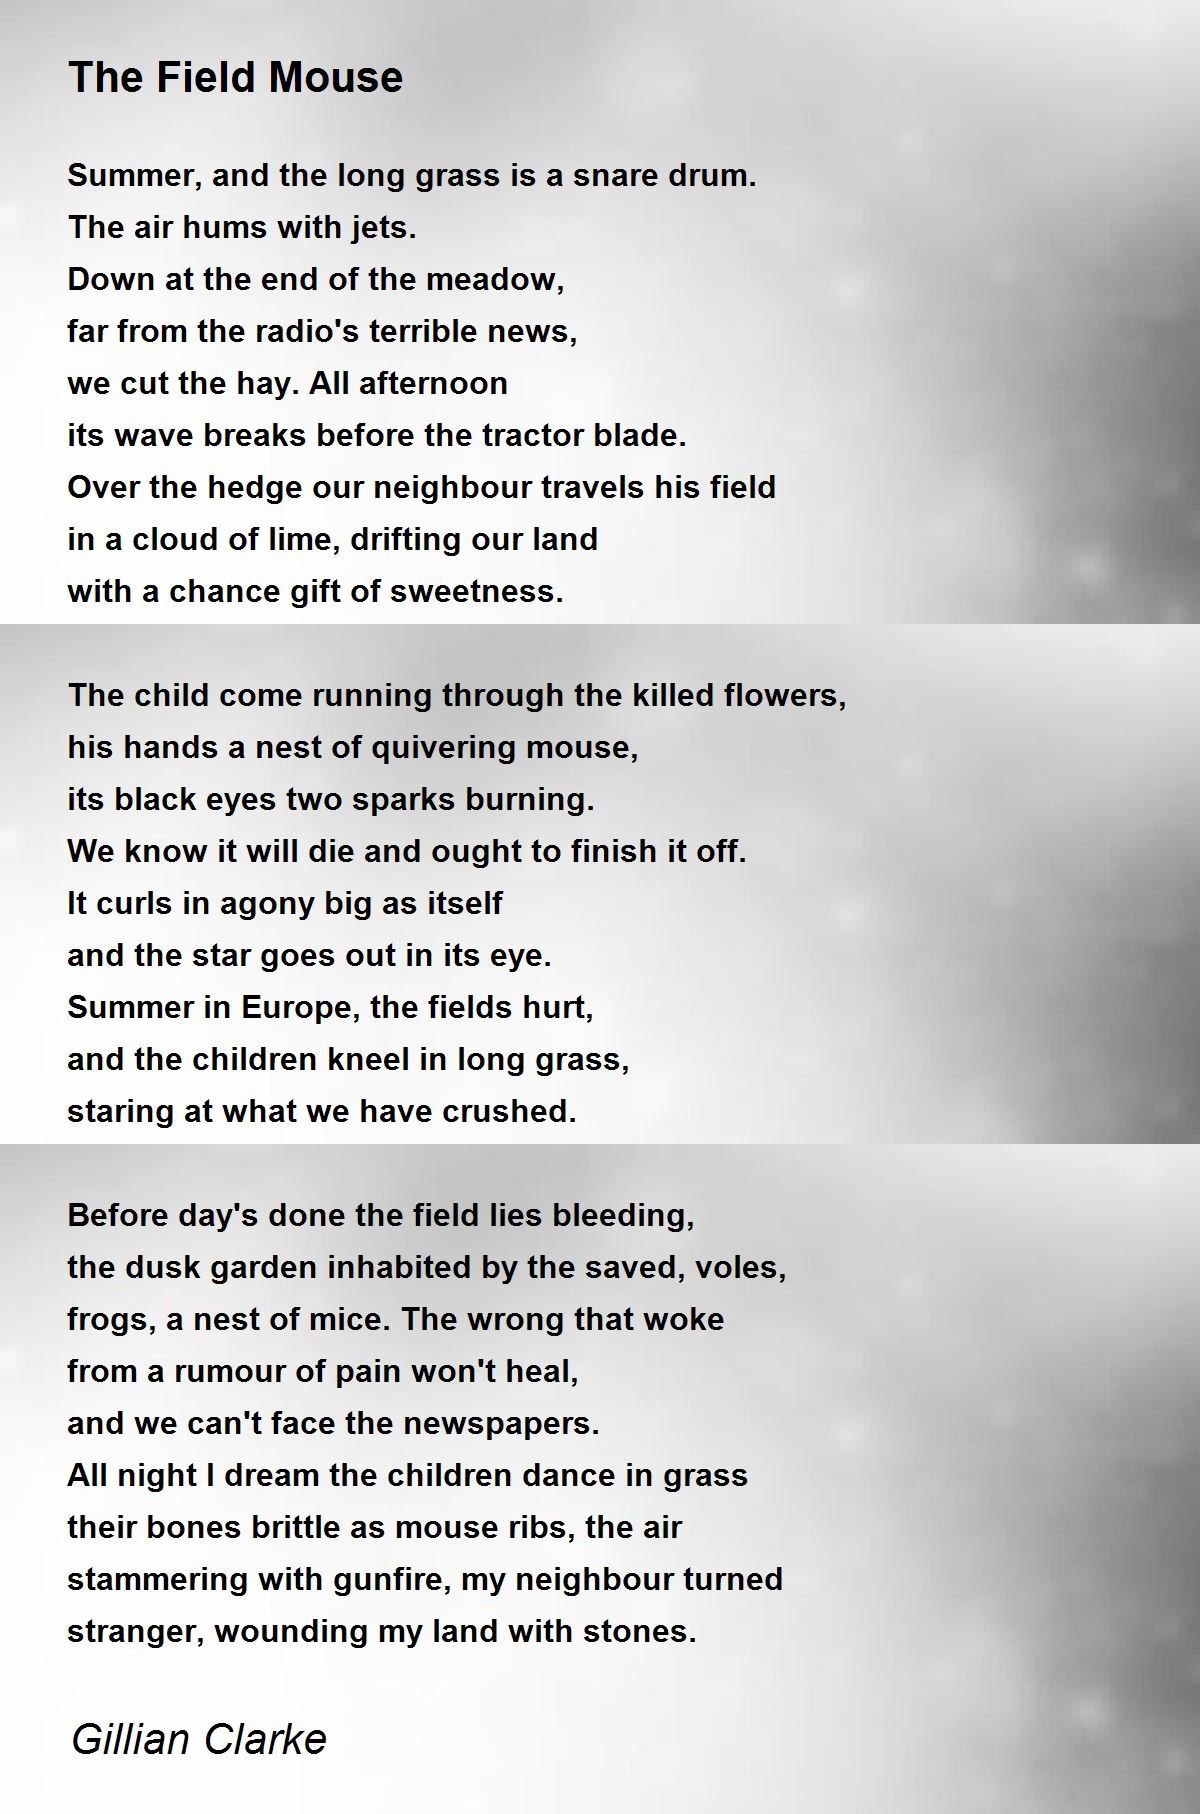 journey gillian clarke full poem